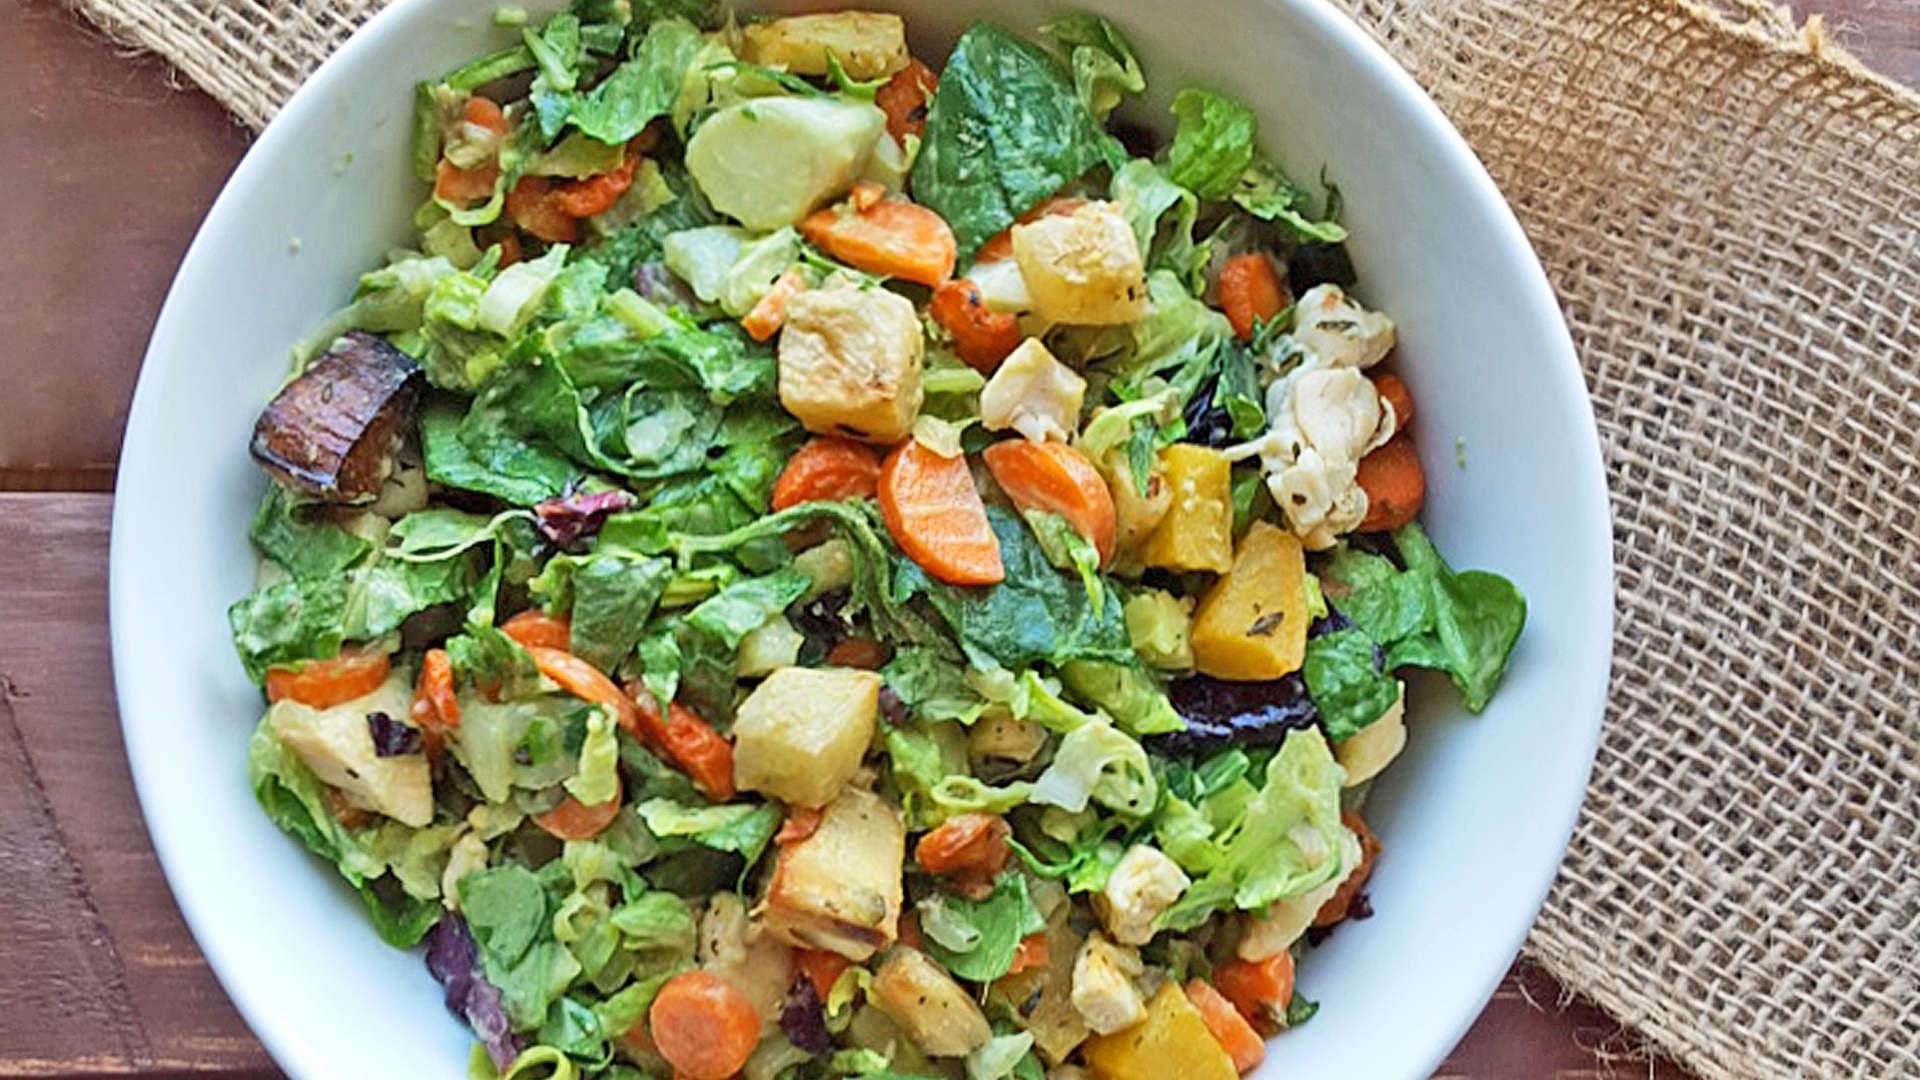 Hearty Warm Winter Salad Recipes